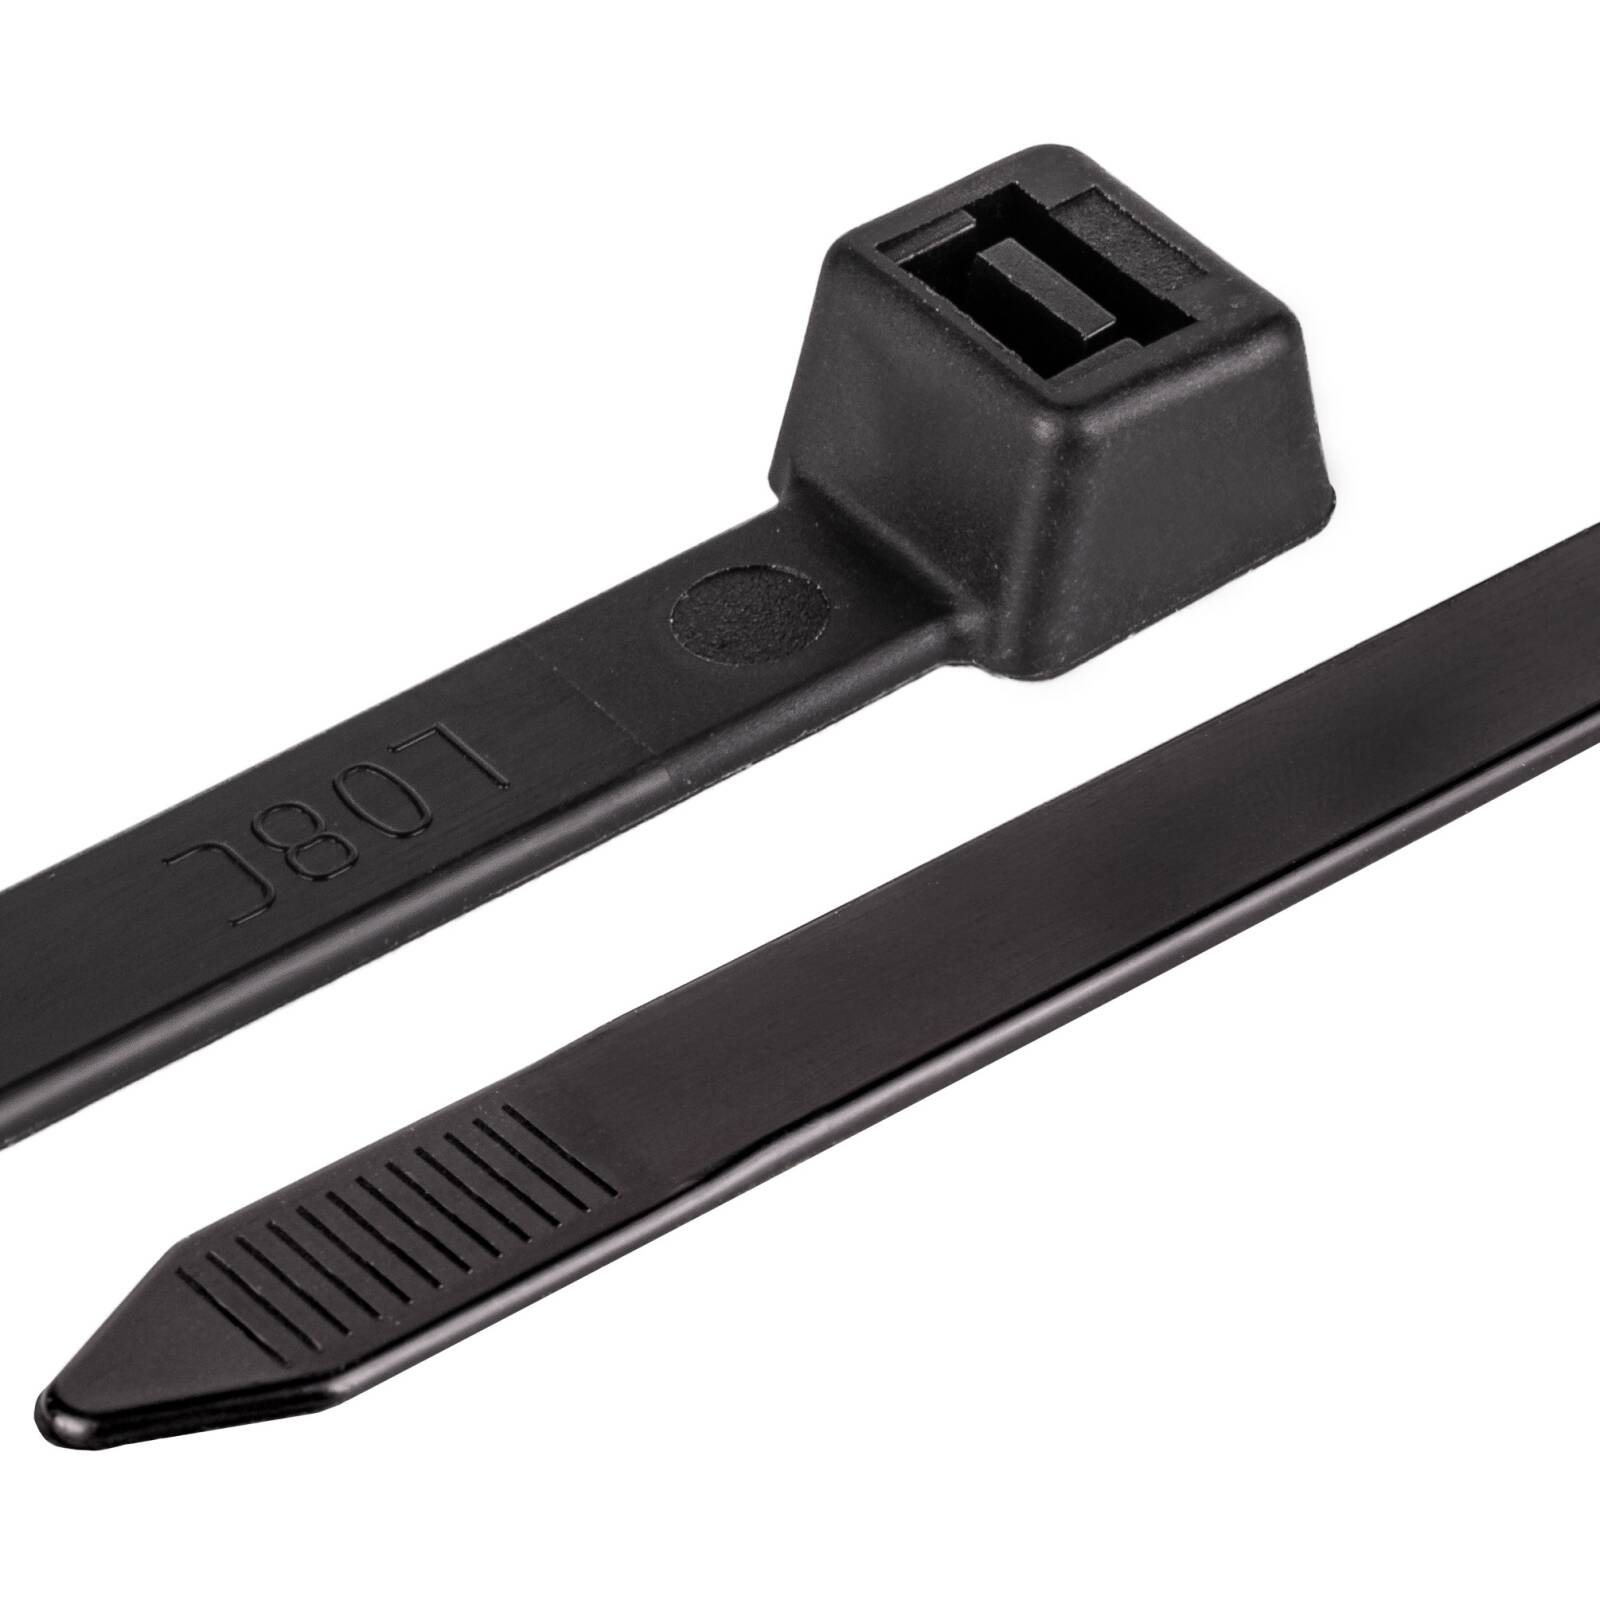 Kabelbinder 300mm, schwarz 4,8 mm breit